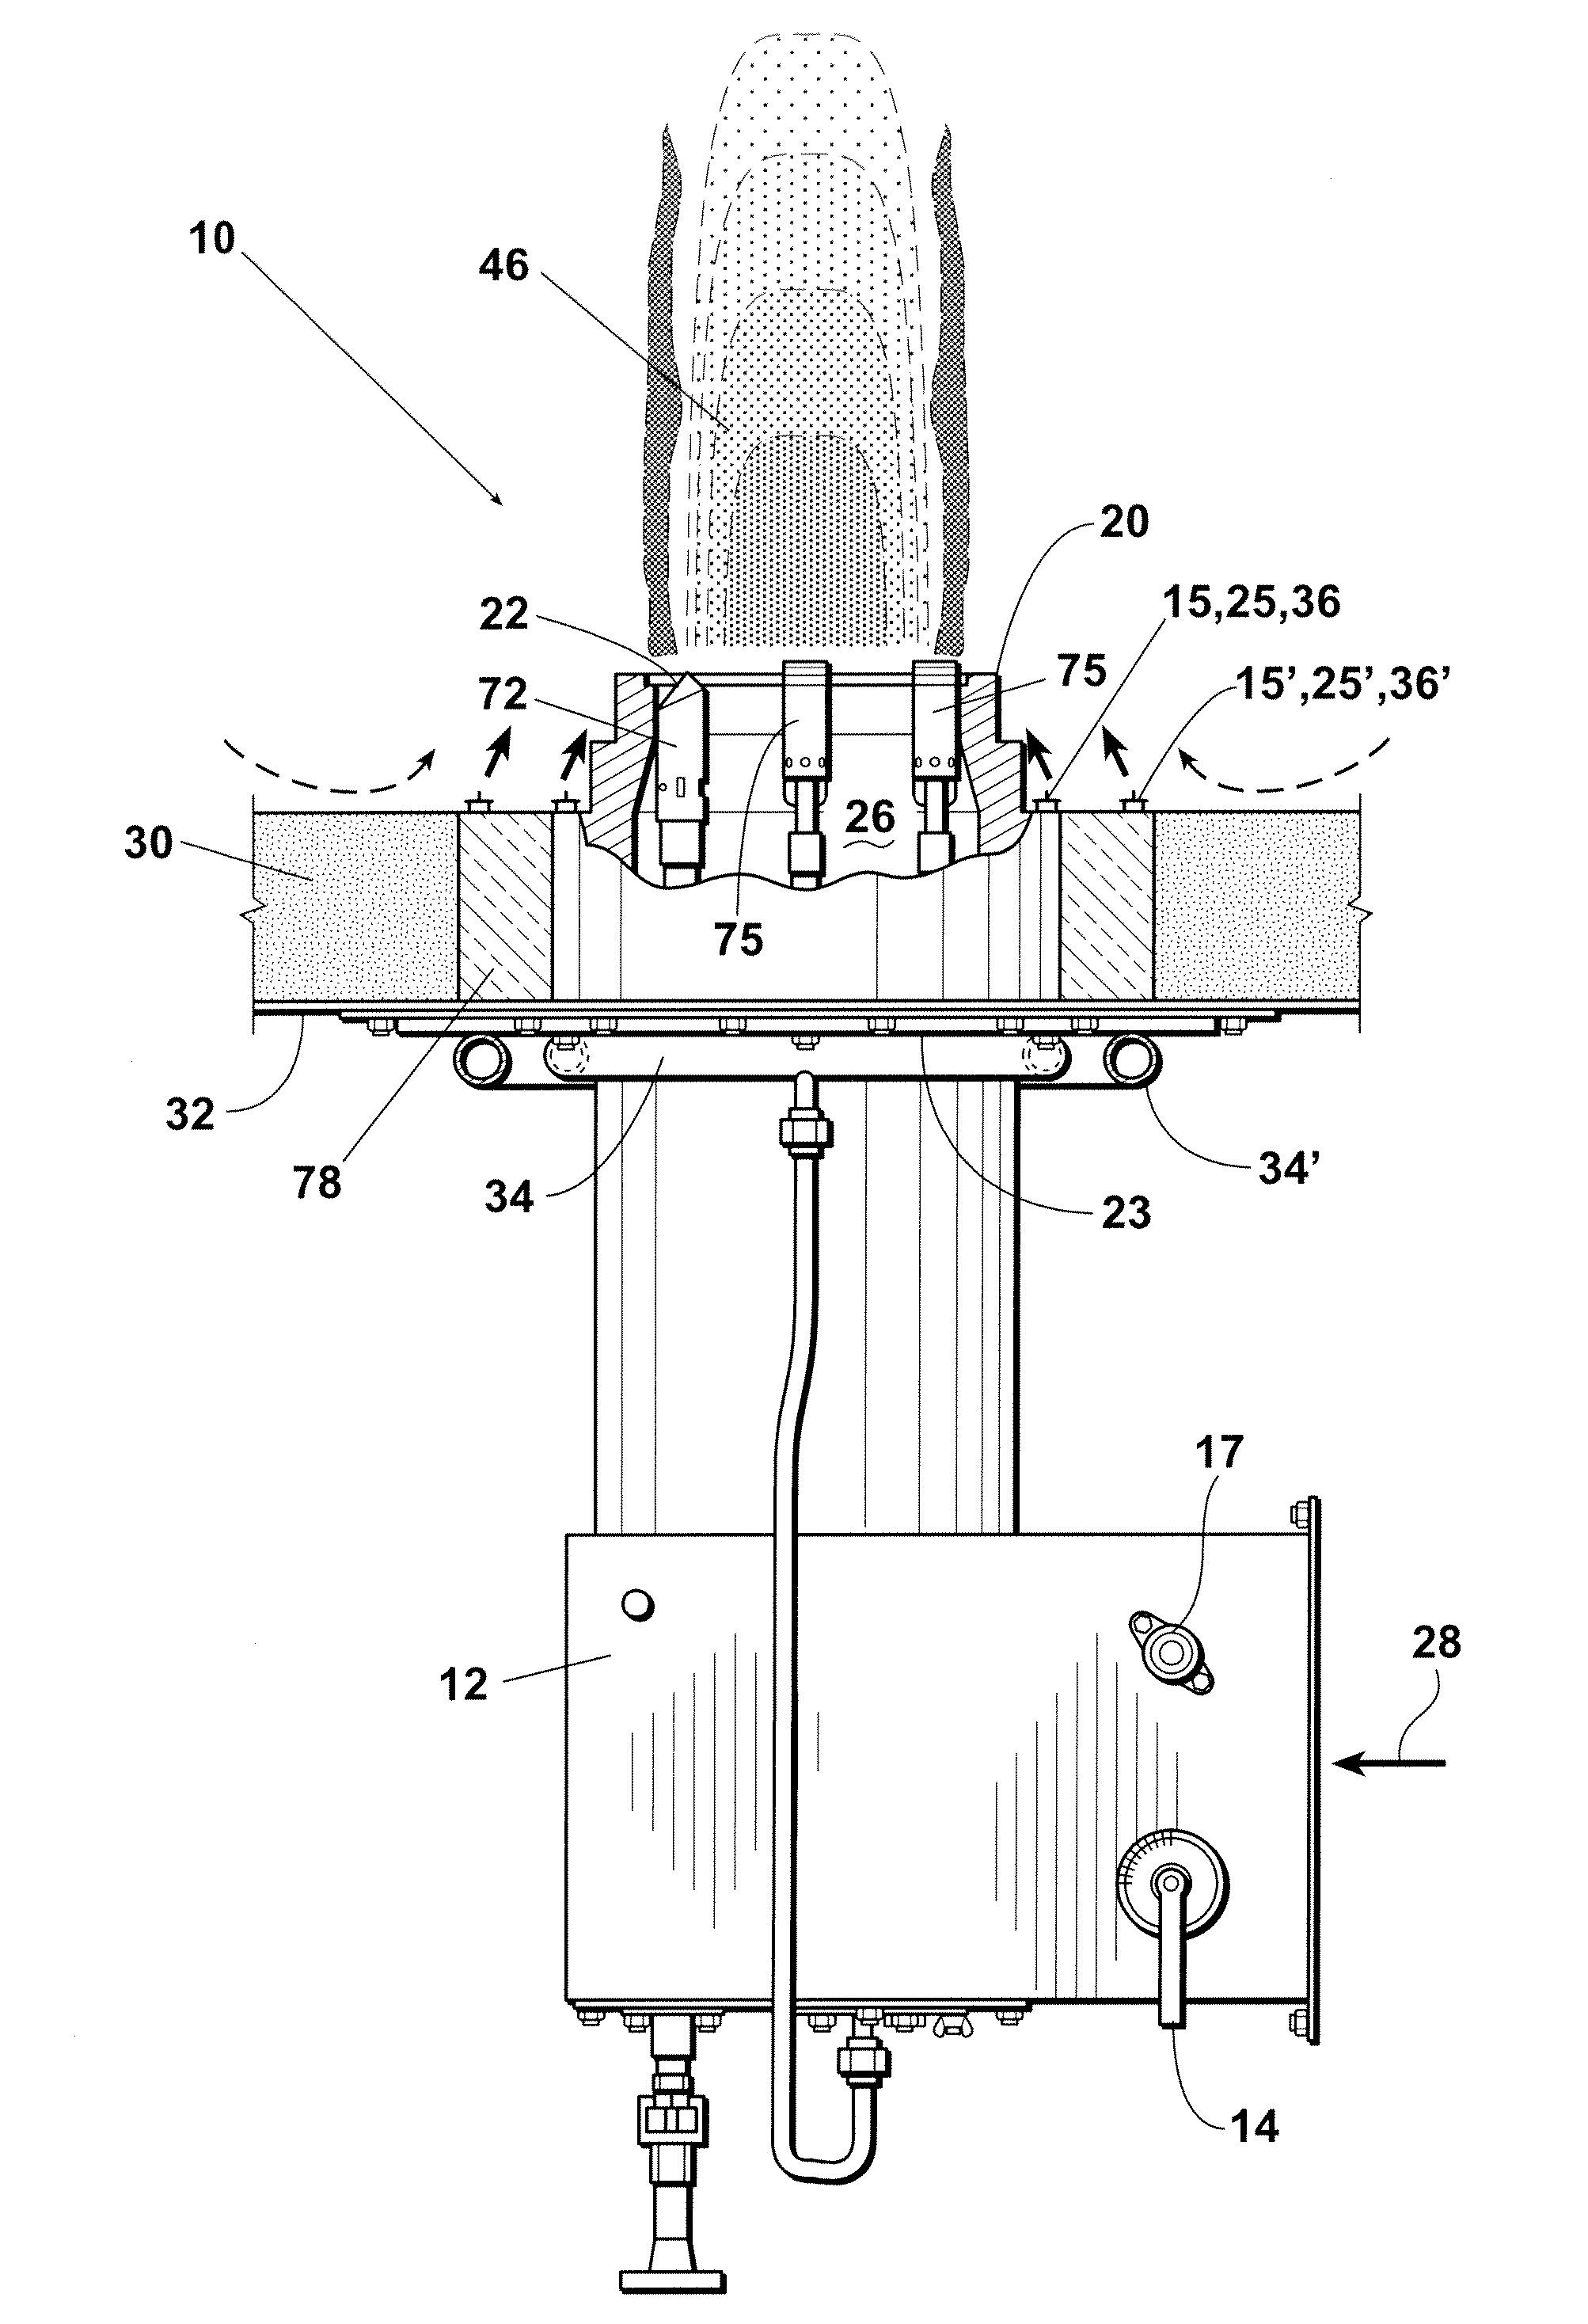 Low NOX burner apparatus and method